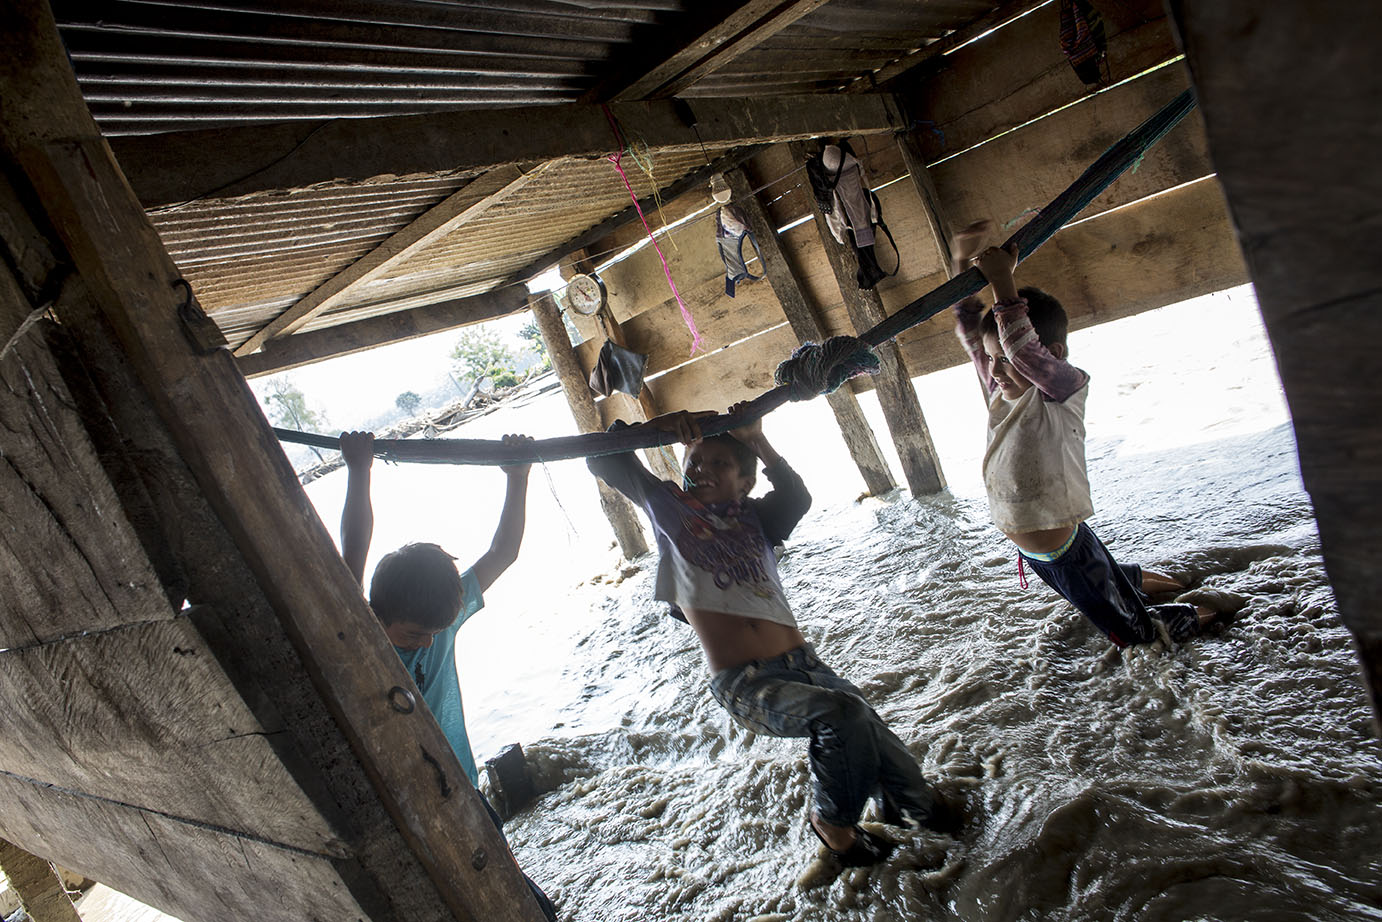 Efron Zebedeo Yac, Kevin Coc y José Raul Botzoc juegan jalándose de la hamaca que quedó en la casa destruida del primer niño, atravesada por el agua desbordada del río Zarco, el 13 de noviembre, en el Valle del Polochic. Simone Dalmasso